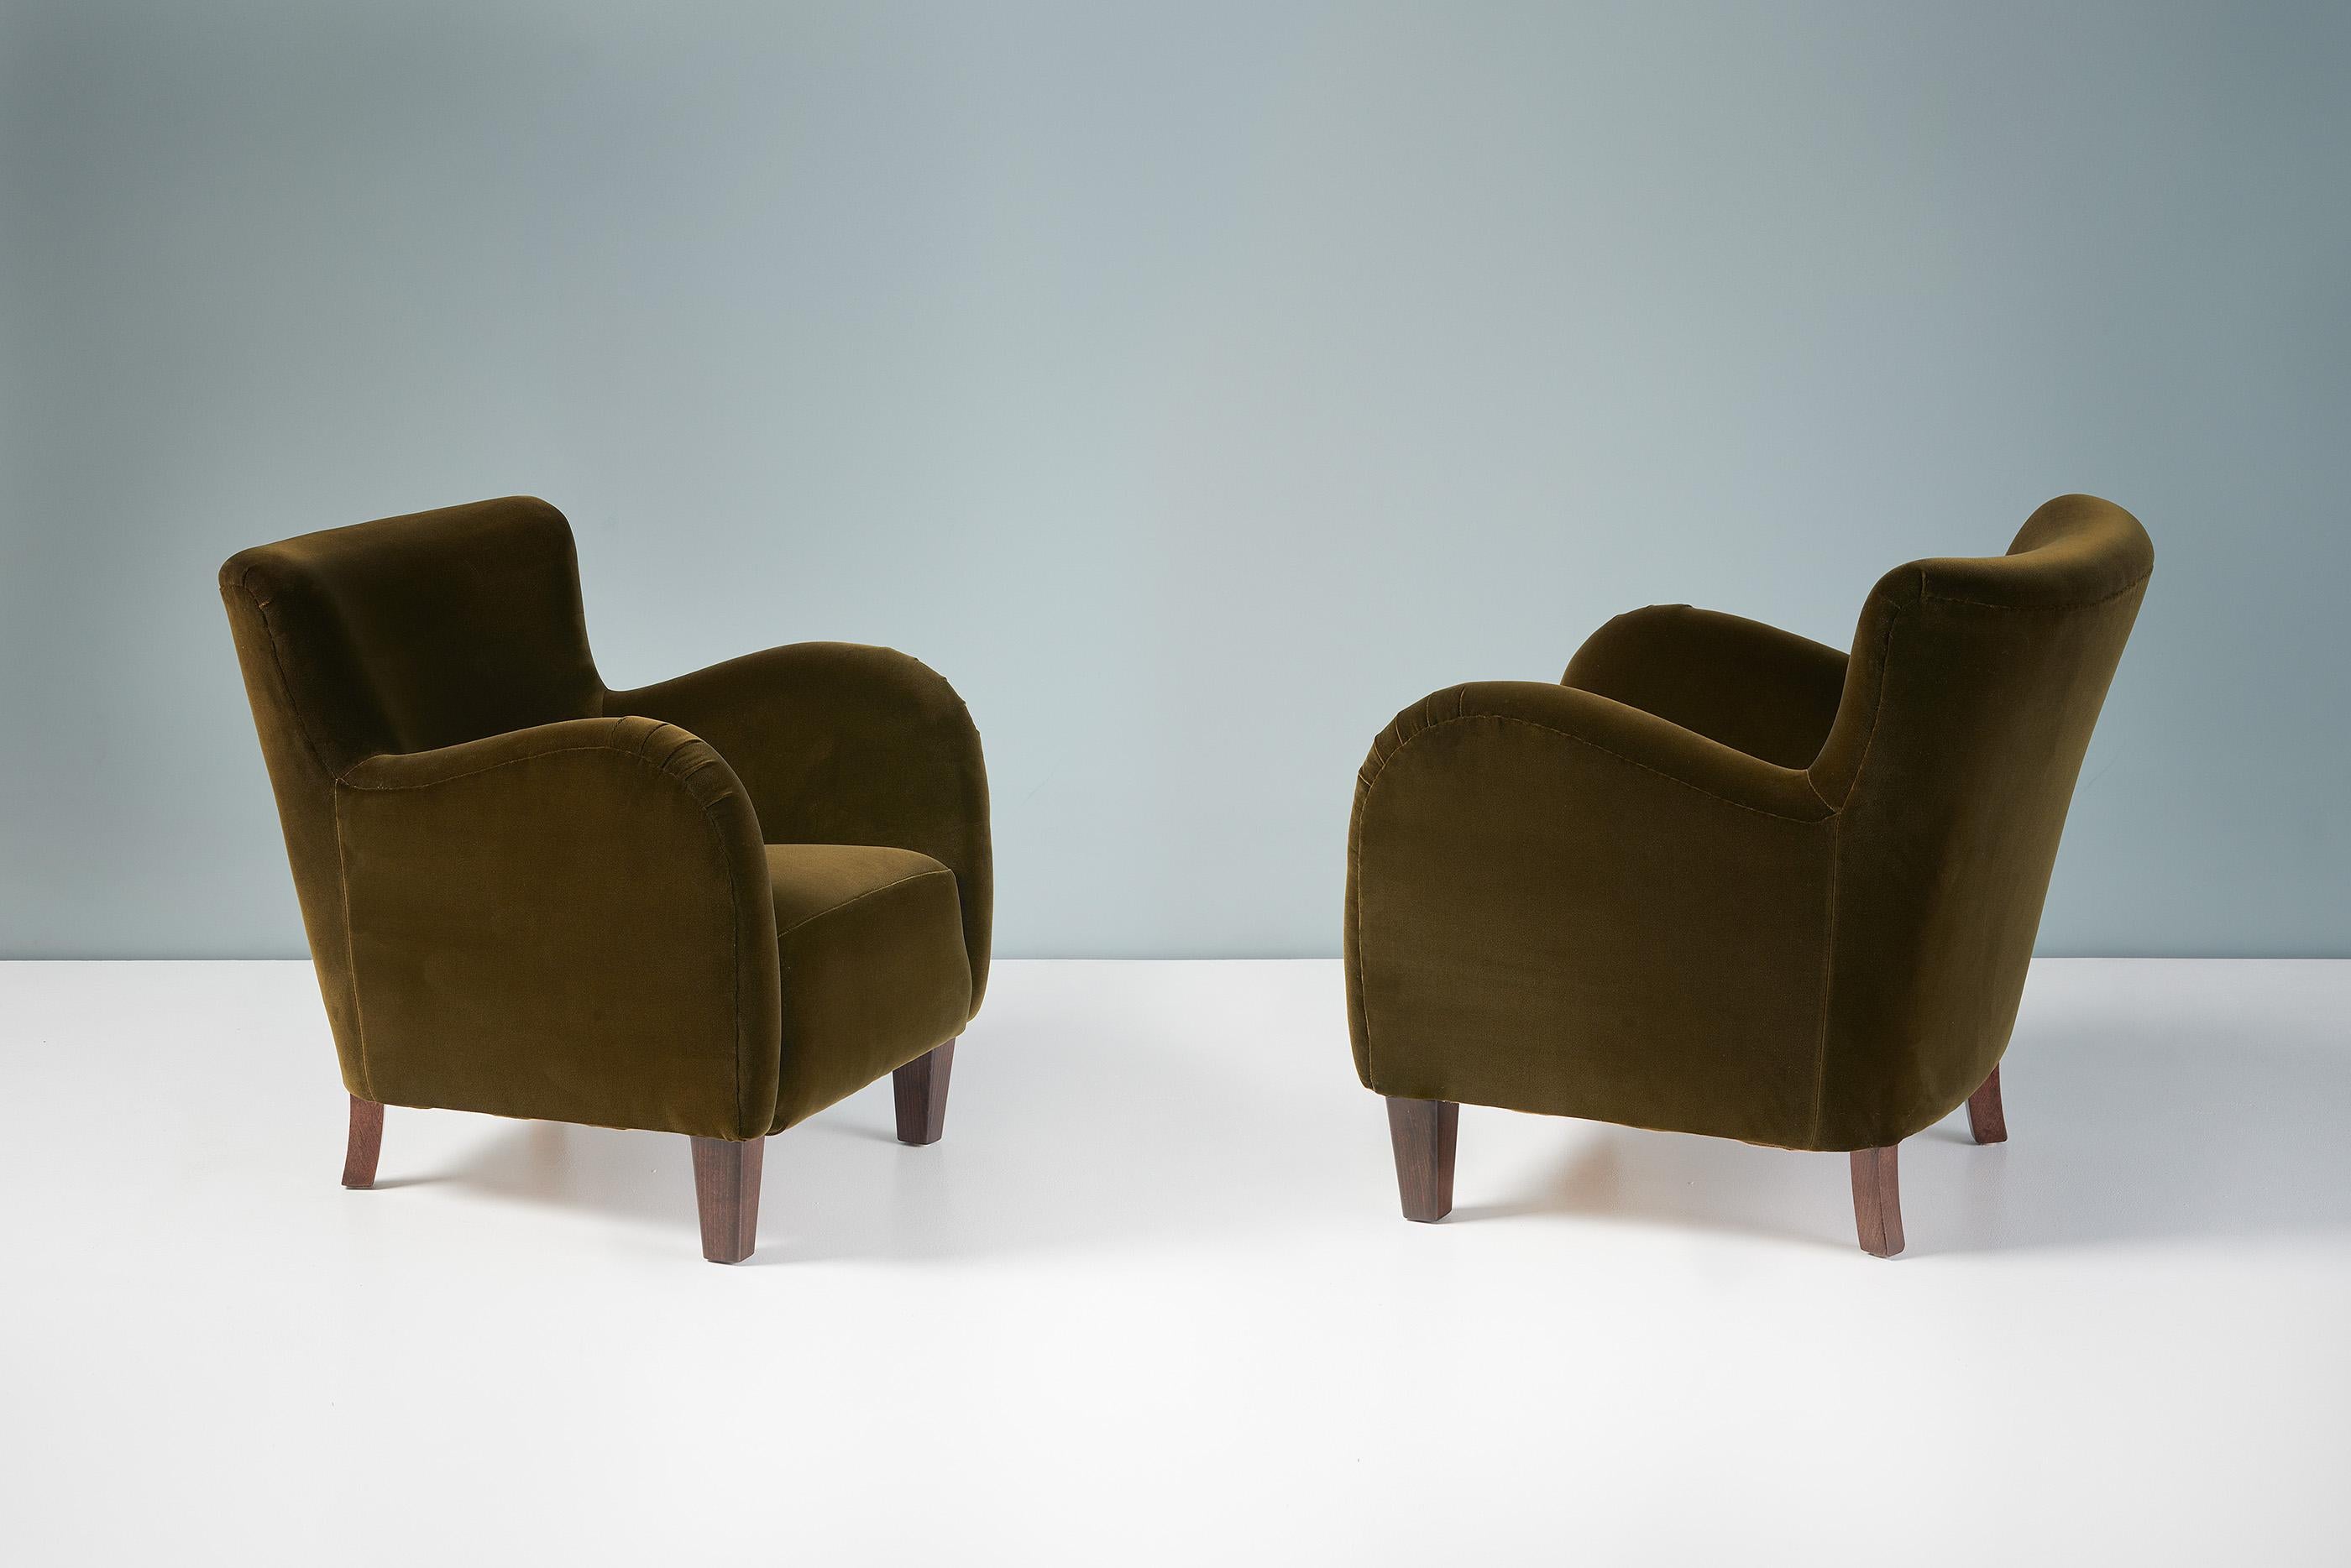 Paire de chaises longues des années 1940 fabriquées par un ébéniste danois dans les années 1940. Ces exemplaires ont été retapissés dans un tissu de velours vert mousse de Rose Uniacke. Les pieds sont en hêtre teinté.

Chaque chaise a été